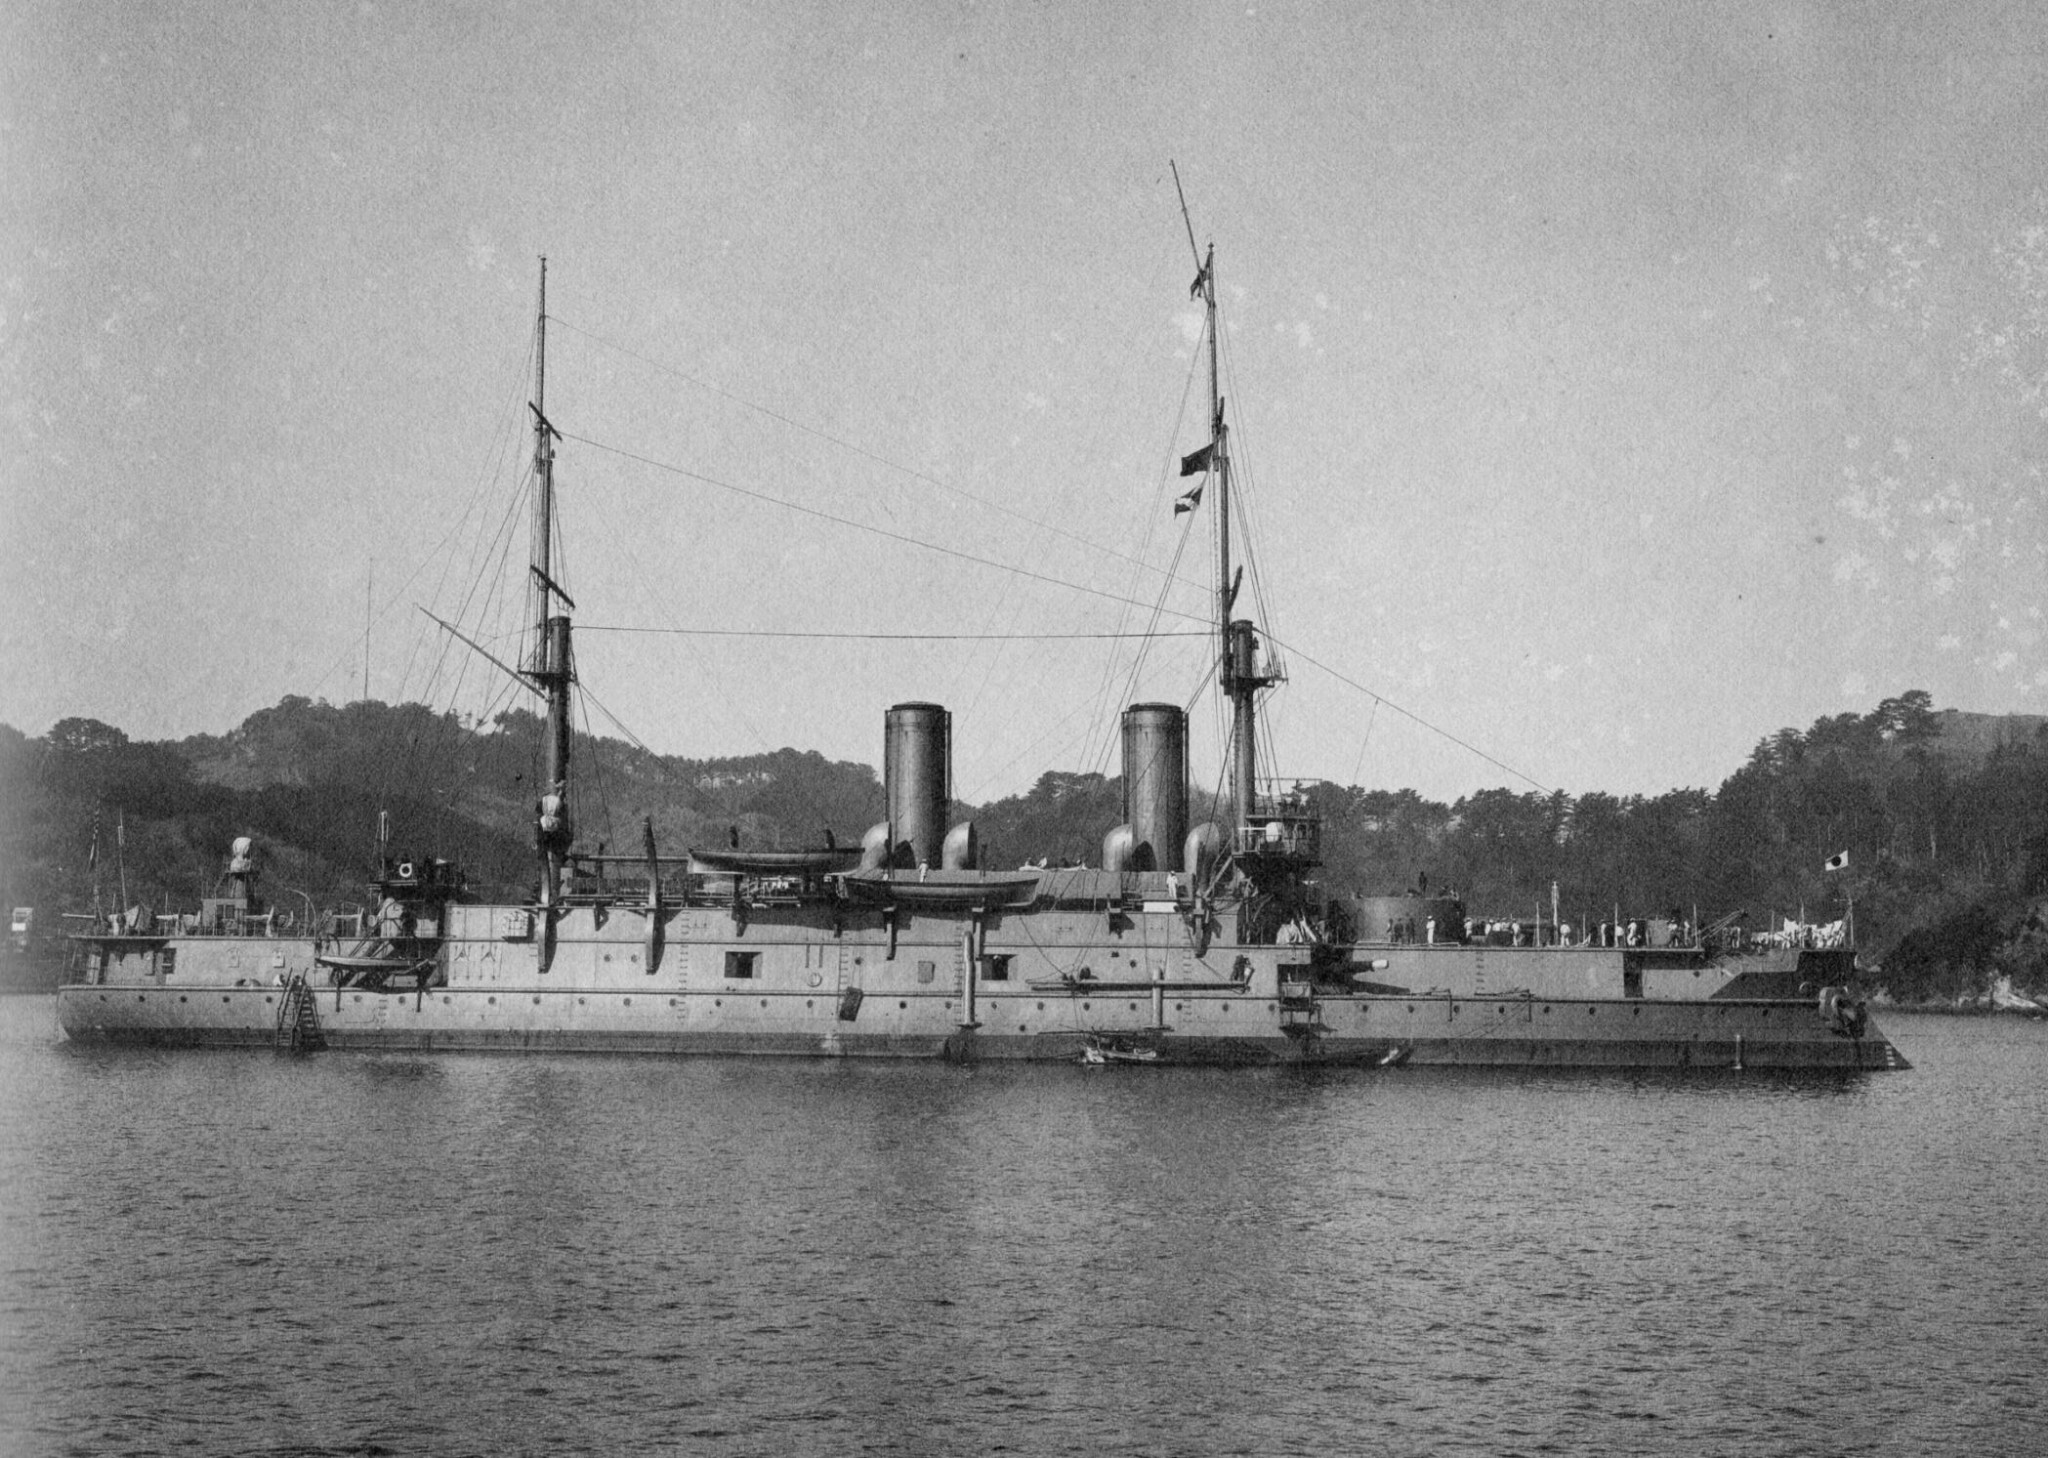 Nikołaj I jako japoński Iki. Okręt ma jeszcze armaty 229 mm, więc zdjęcie musiało być wykonane we wczesnym okresie jego służby pod japońską banderą.